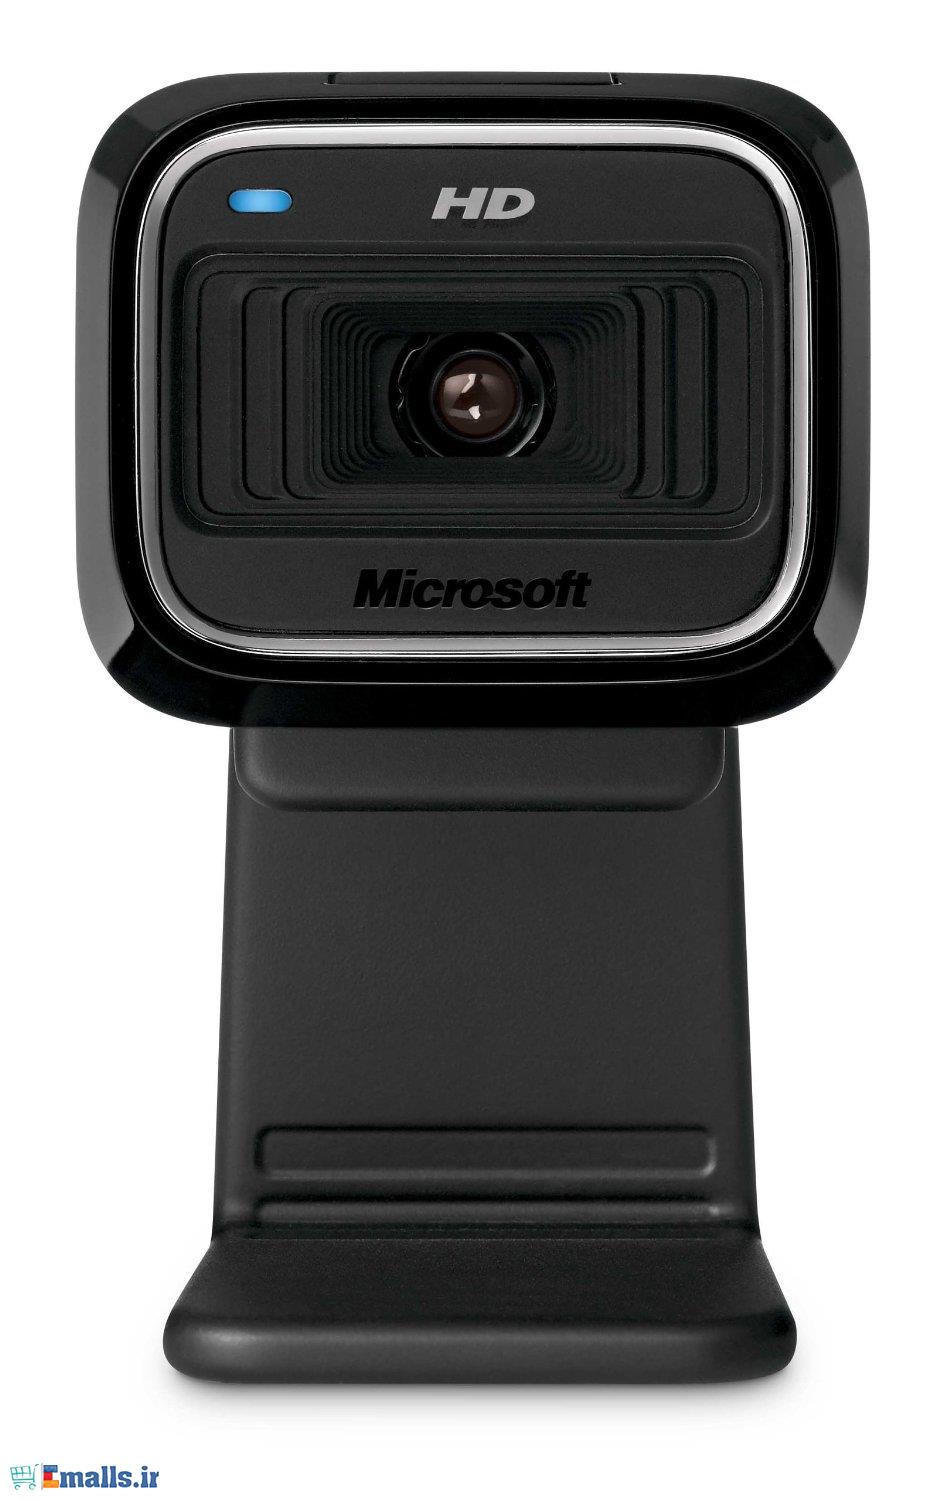 Microsoft LifeCam HD-5000